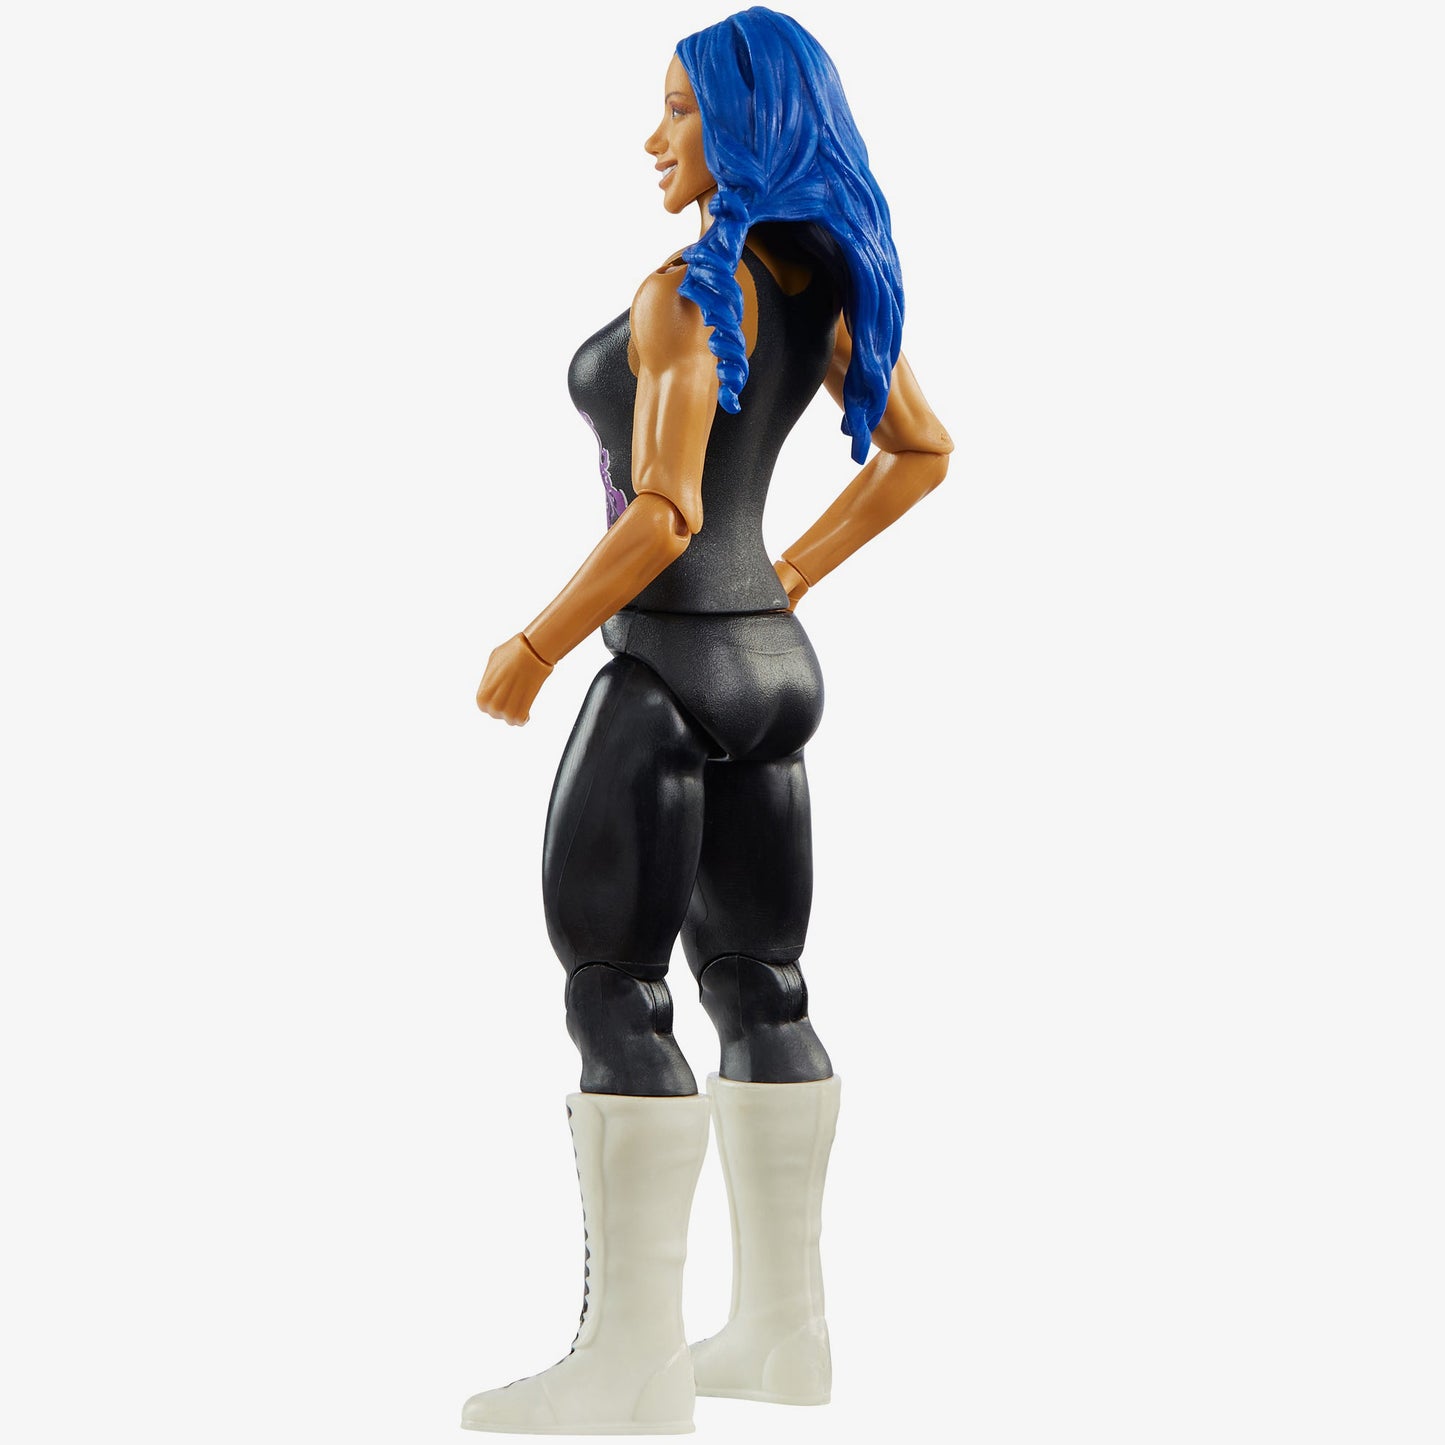 Sasha Banks - WWE Basic Series #112